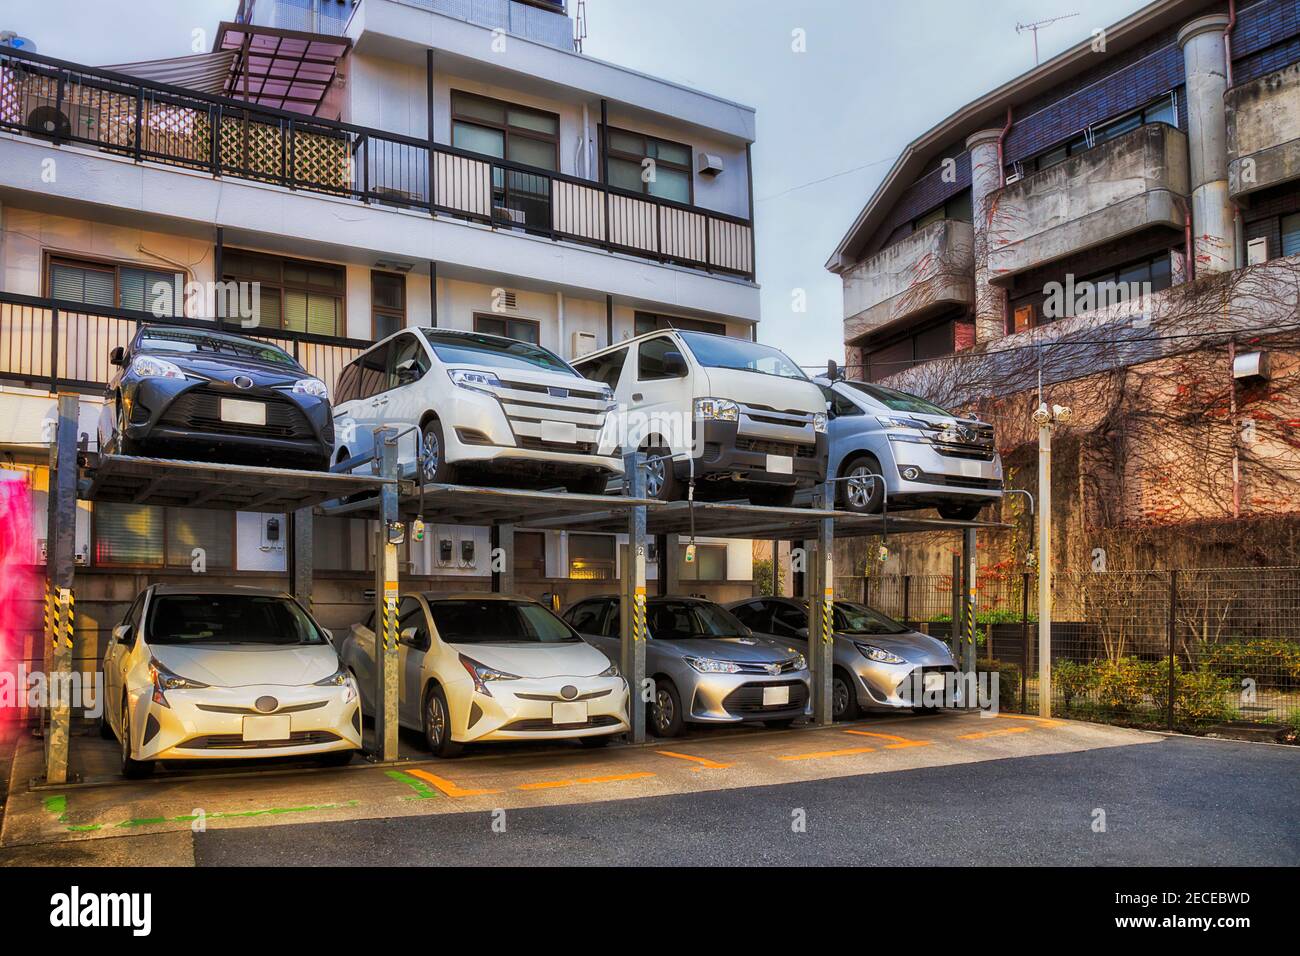 Parcheggio auto a più piani a Tokyo, Giappone - moderna soluzione motorizzata ubran in spazi limitati - noleggio auto. Foto Stock